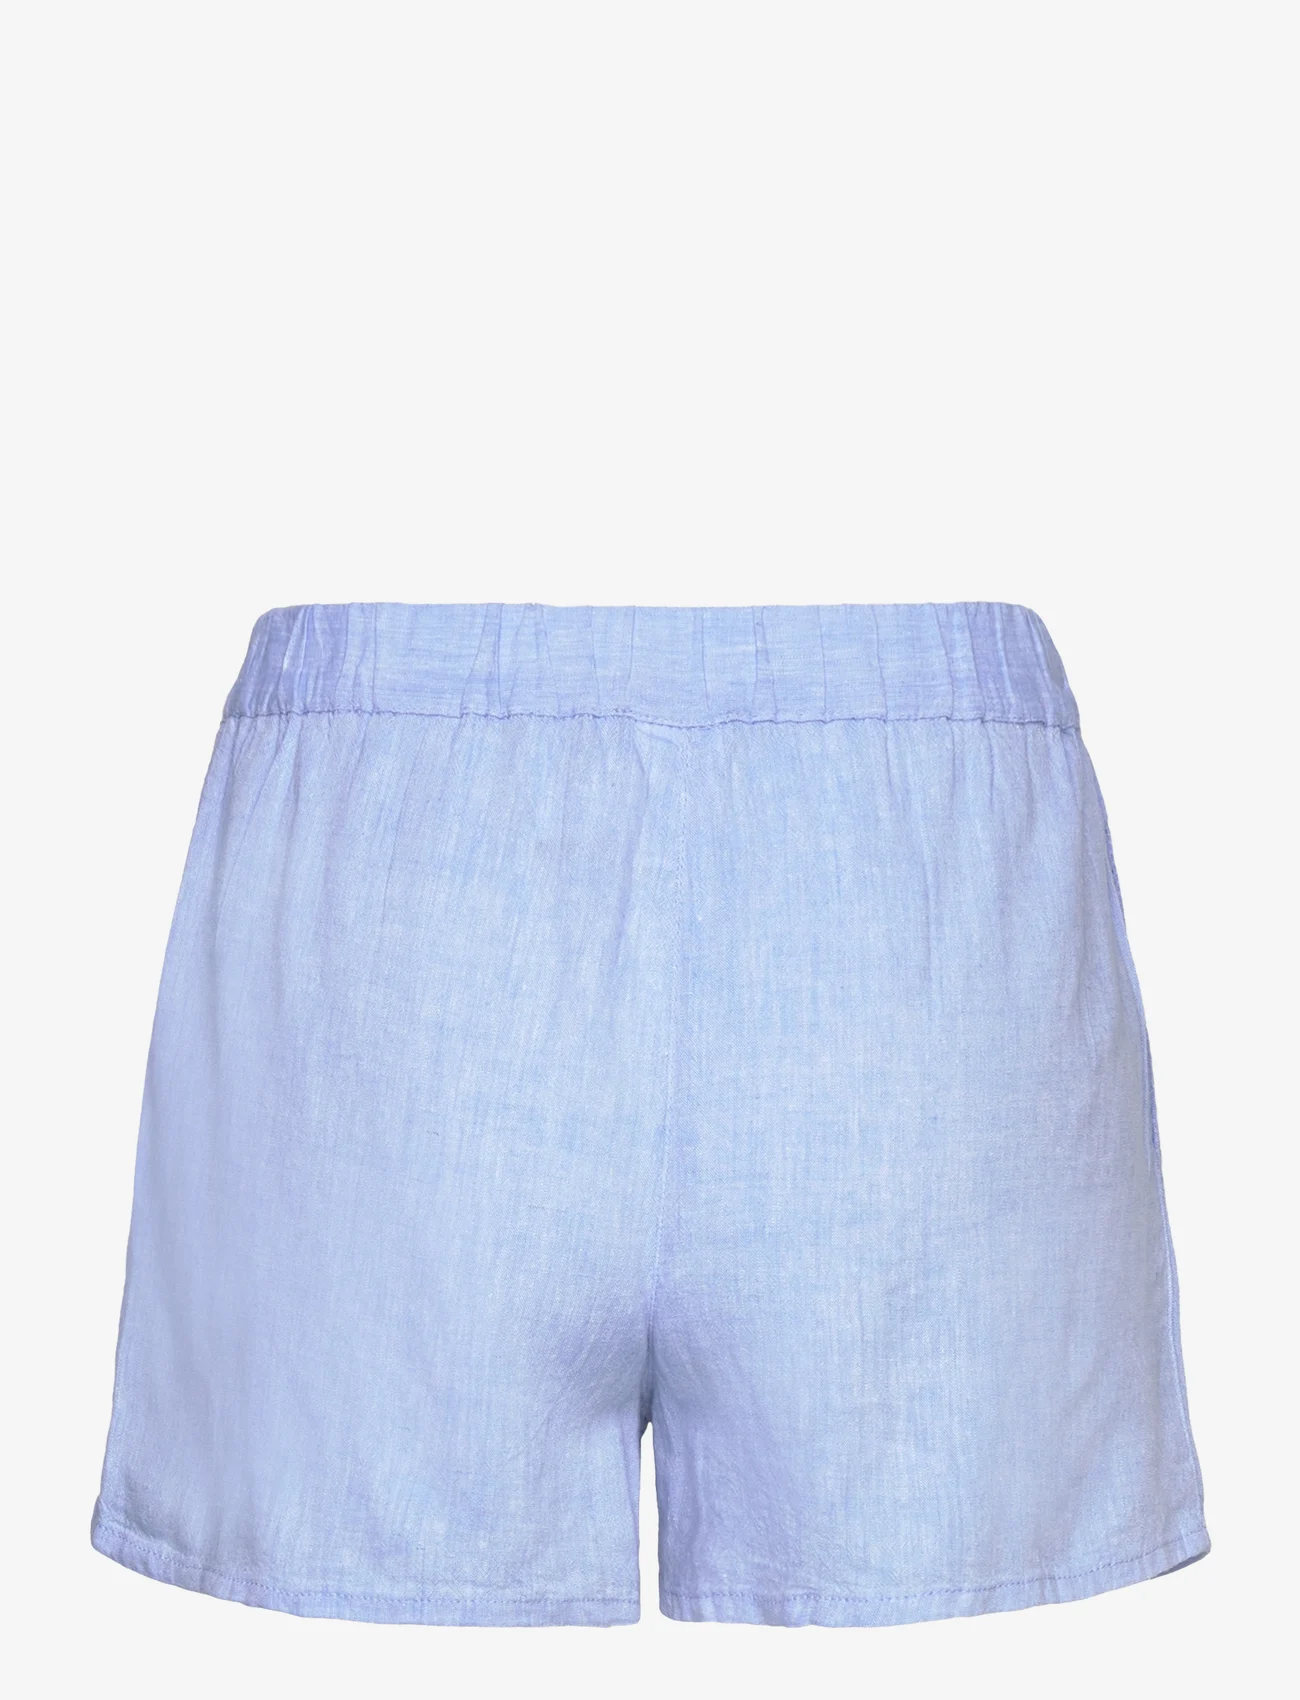 Etam - Justine - Short pyjama bottom - madalaimad hinnad - sky blue - 1